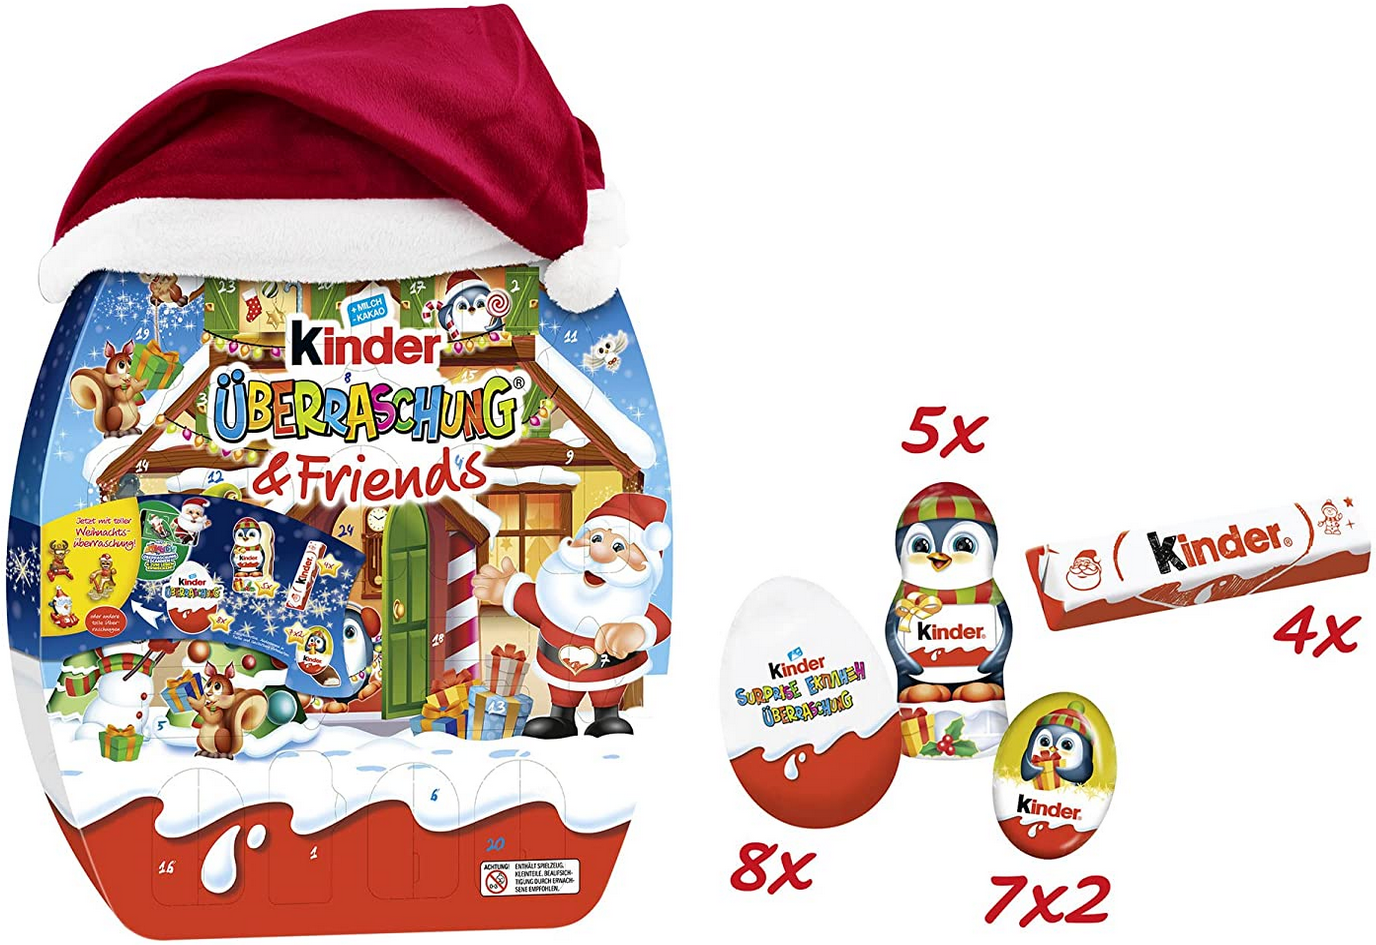 Kinder Überraschung & Friends Adventskalender, 431g für 19,99€ (statt 30€?)